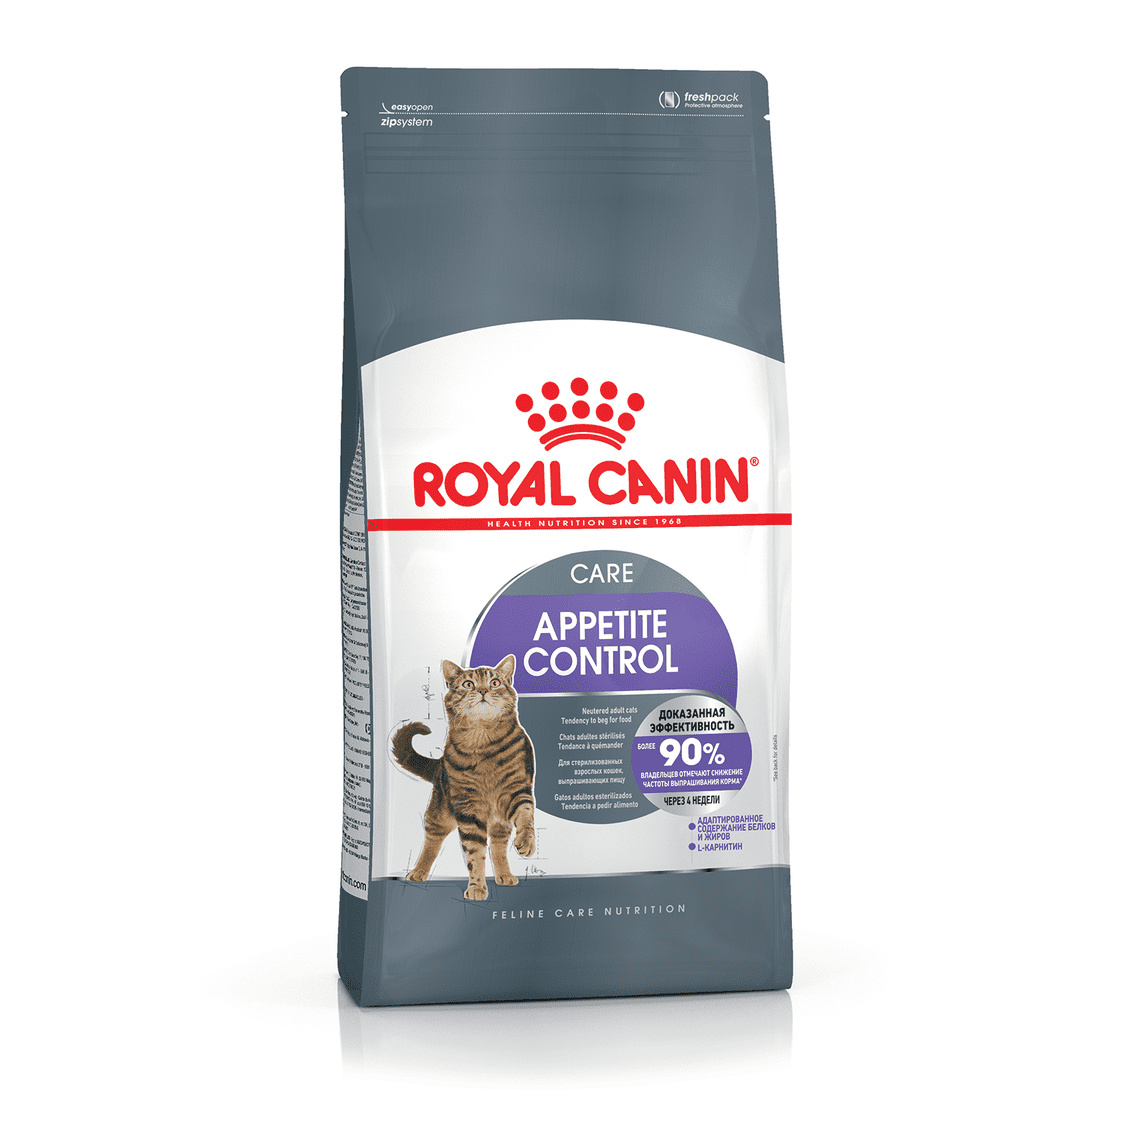 Royal Canin Корм Royal Canin для взрослых кошек, рекомендуется для контроля выпрашивания корма (2 кг) royal canin корм royal canin для взрослых кошек рекомендуется для контроля выпрашивания корма 2 кг